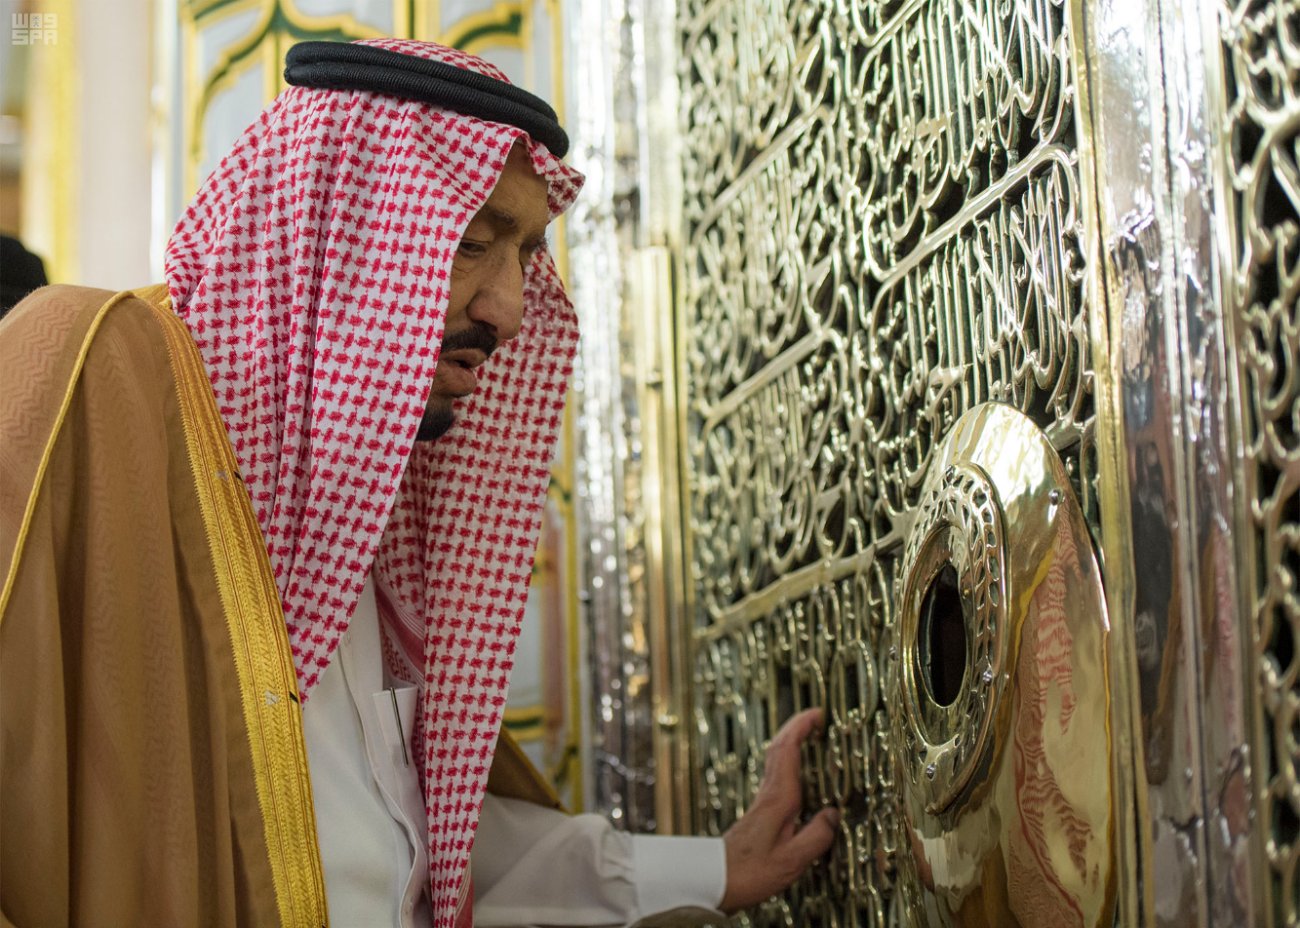 شاهد.. 14 صورة لزيارة الملك المسجد النبوي والصلاة في الروضة الشريفة